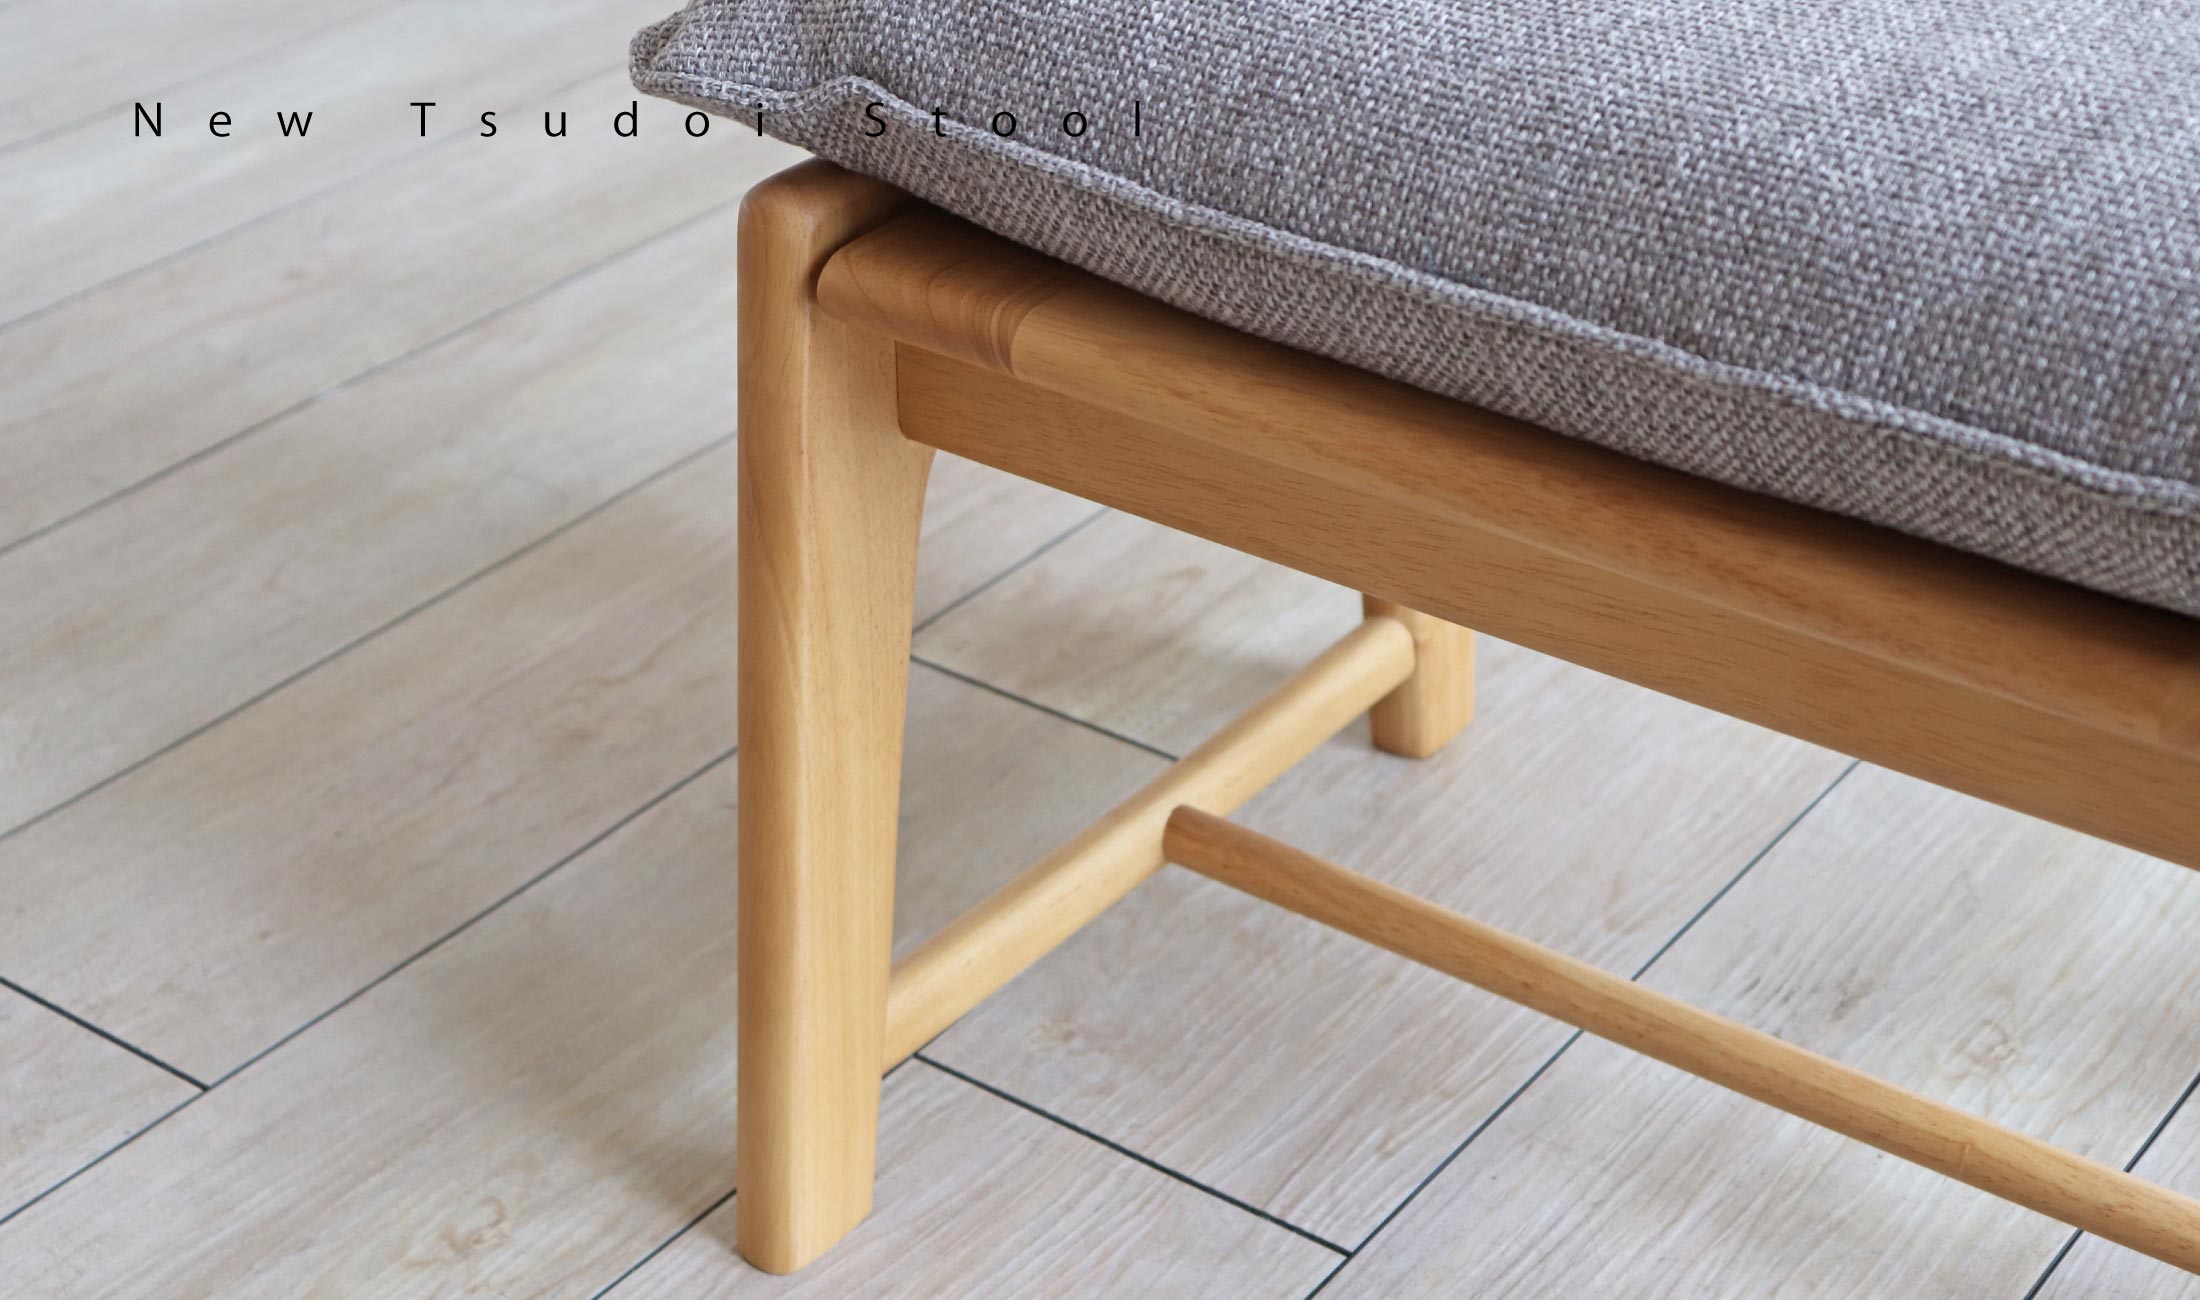 NewTsudoiニュー集い スツール：クッションのやさしい座り心地が魅力・ラバーウッド材